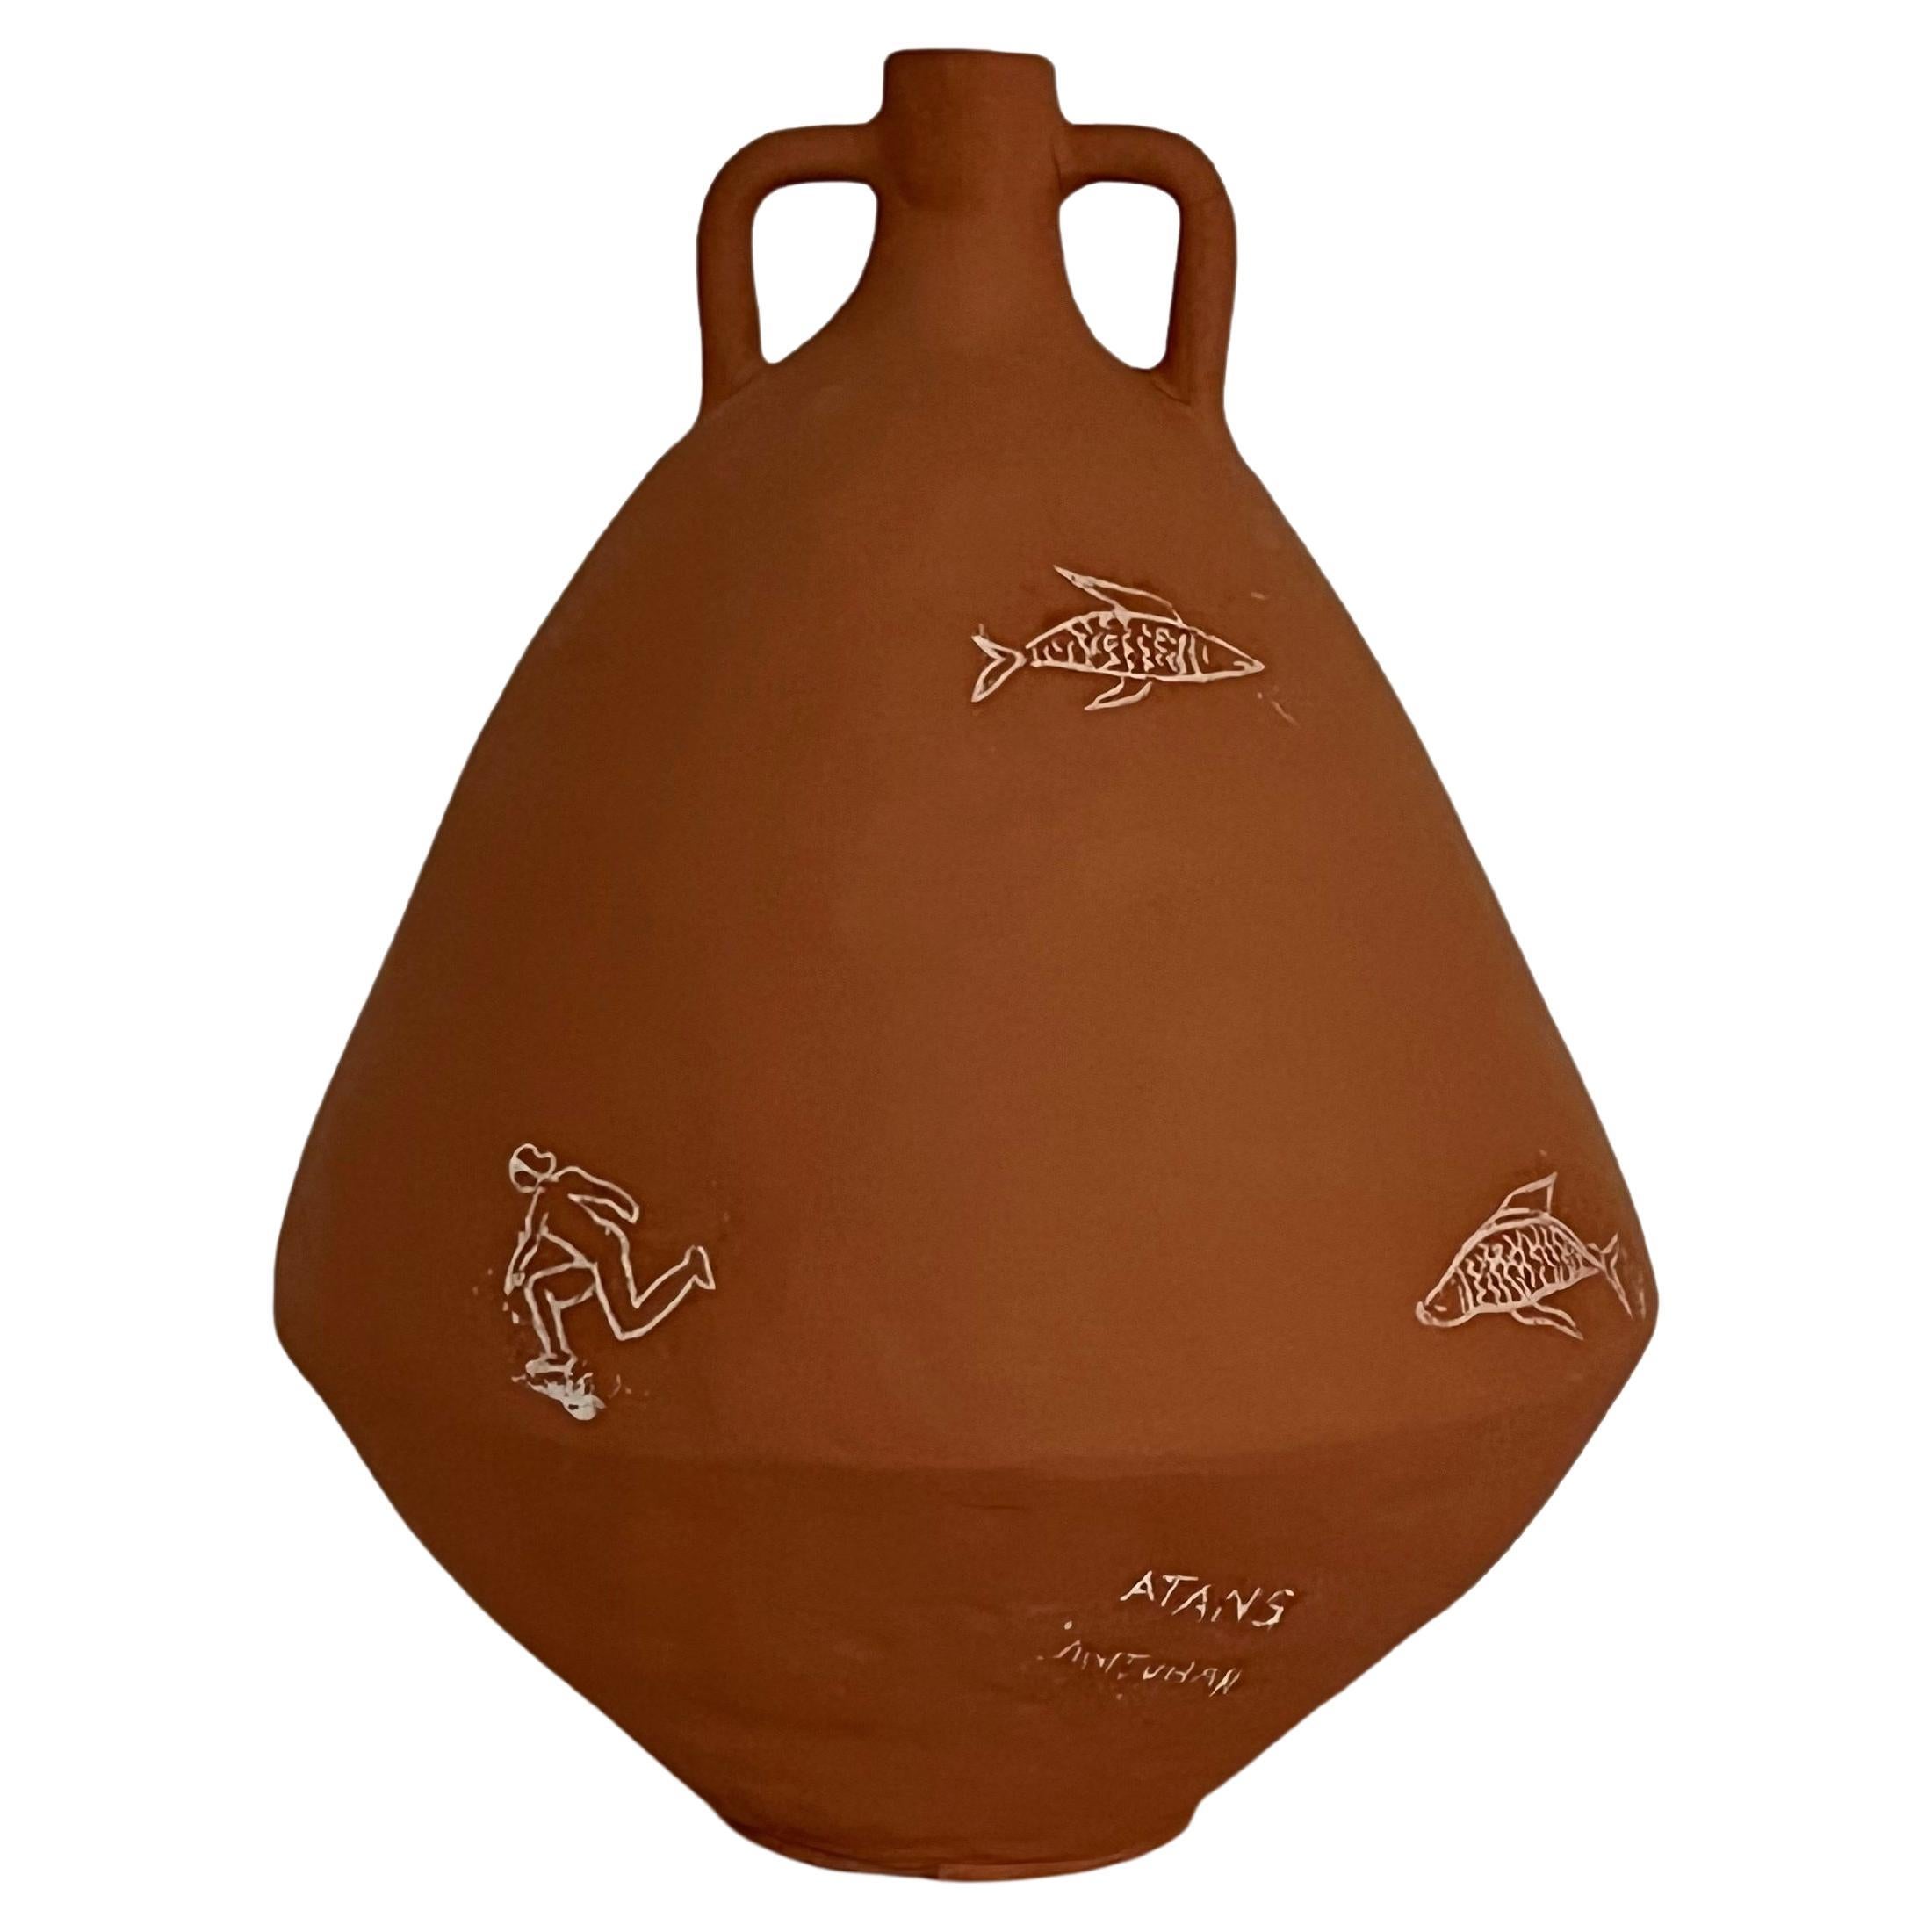 Illustrierte Terrakotta-Vase von Solem Ceramics